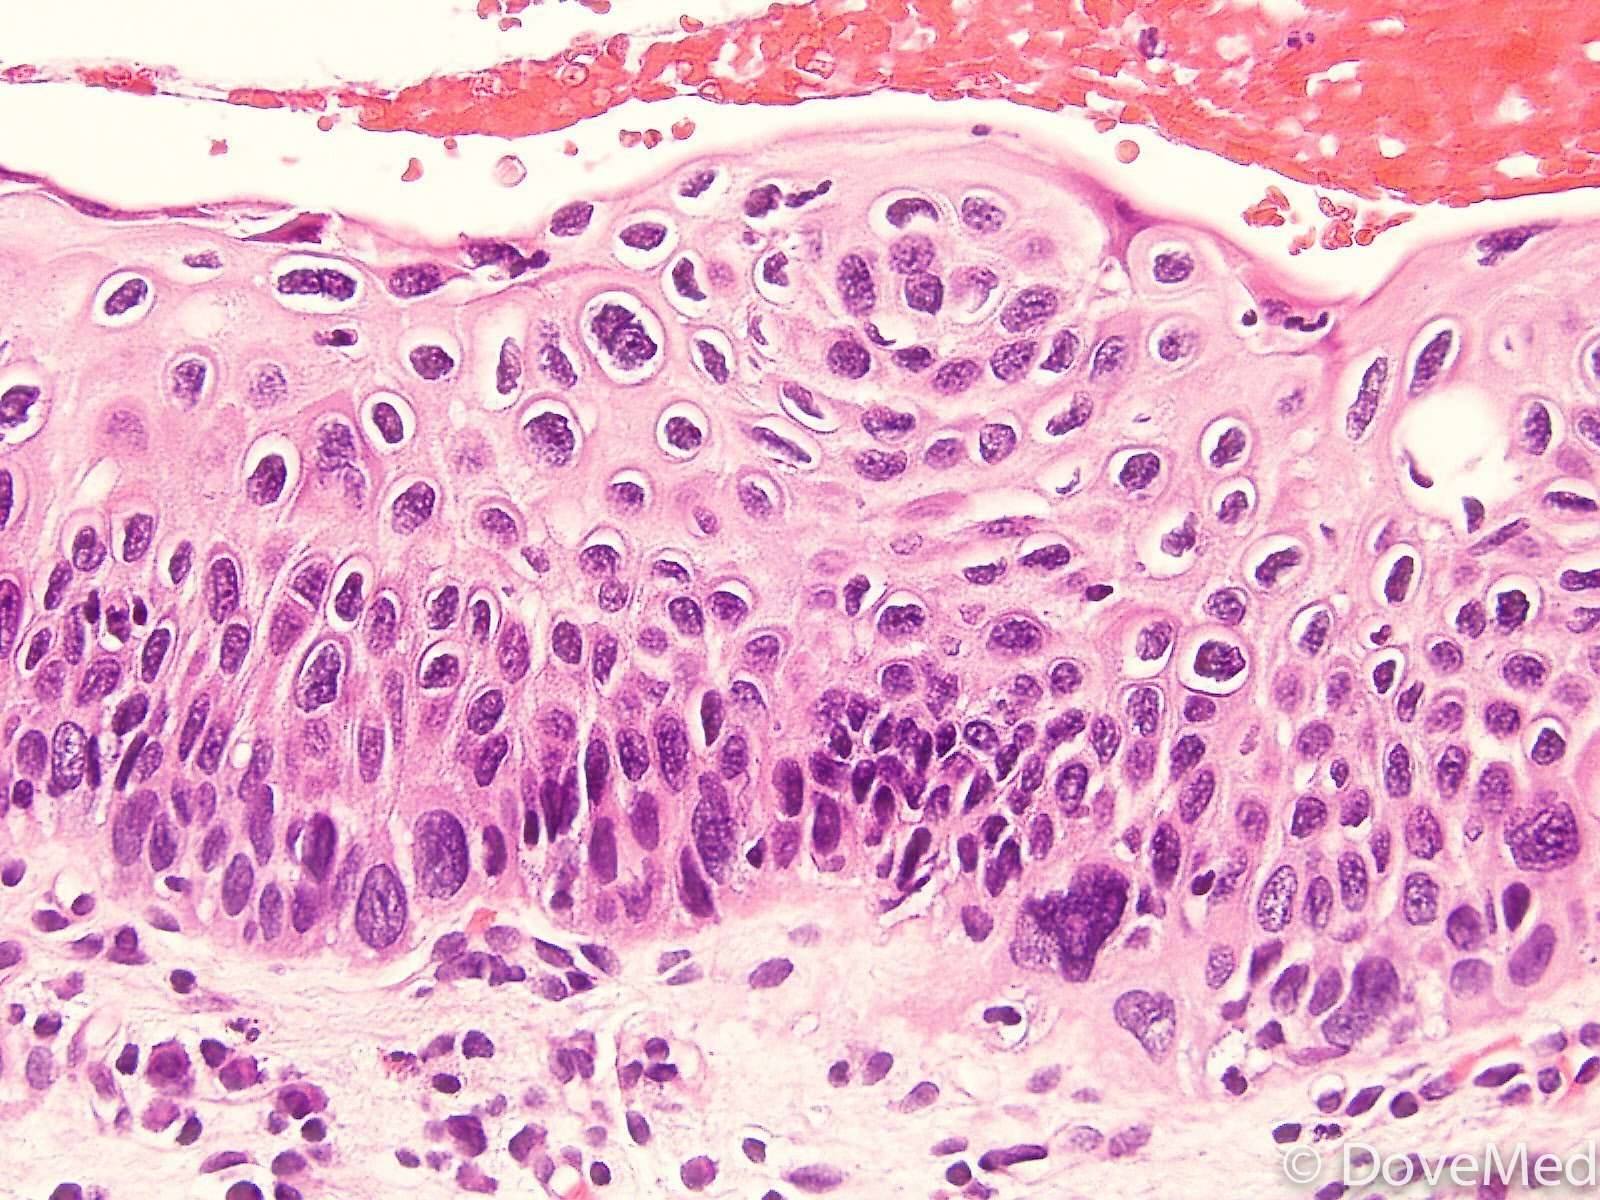 Squamous Cell Carcinoma In Situ of Anus